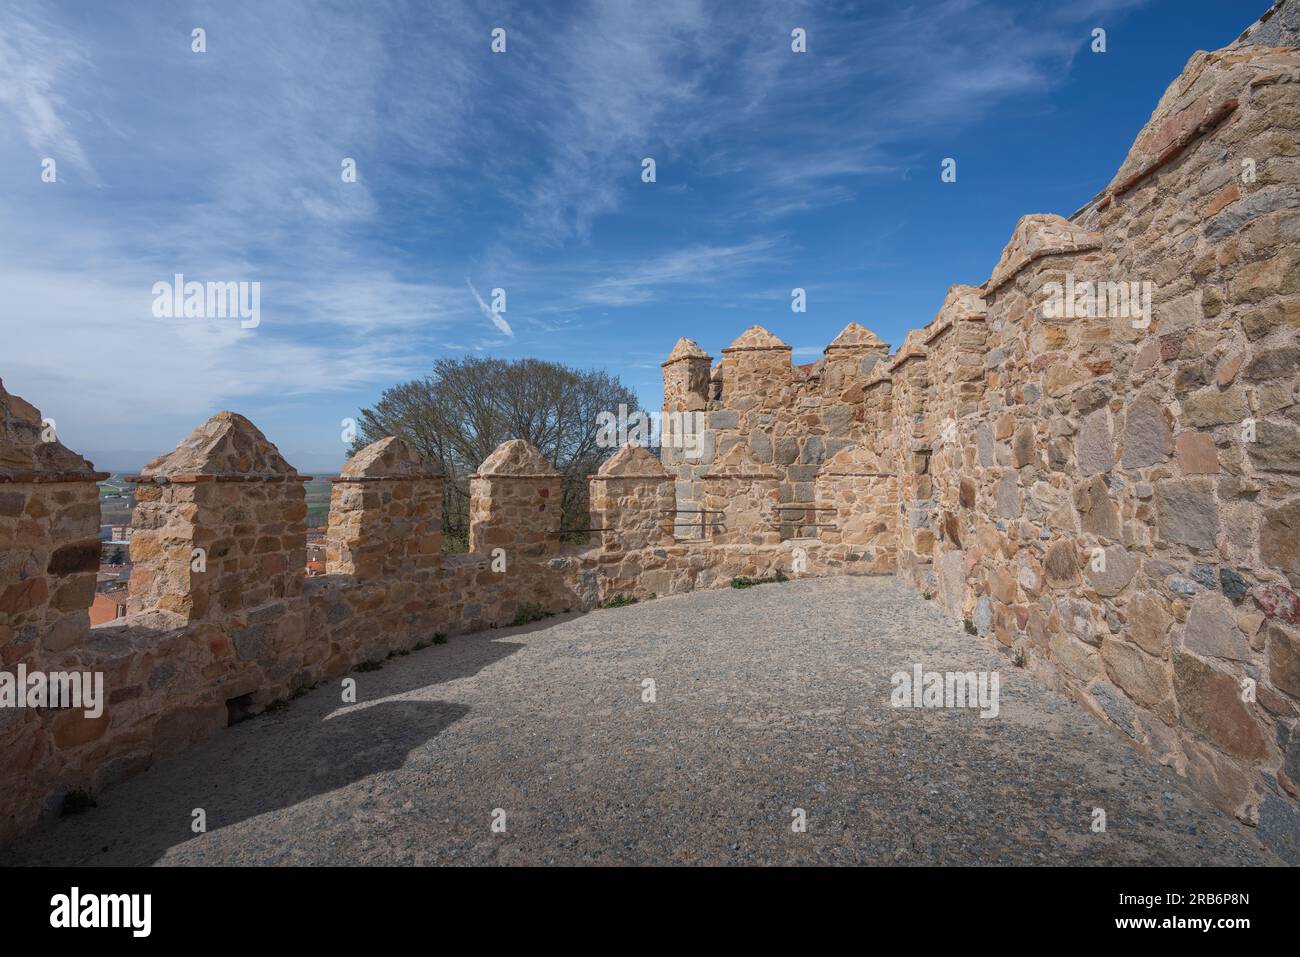 Medieval Walls of Avila Battlements - Avila, Spain Stock Photo